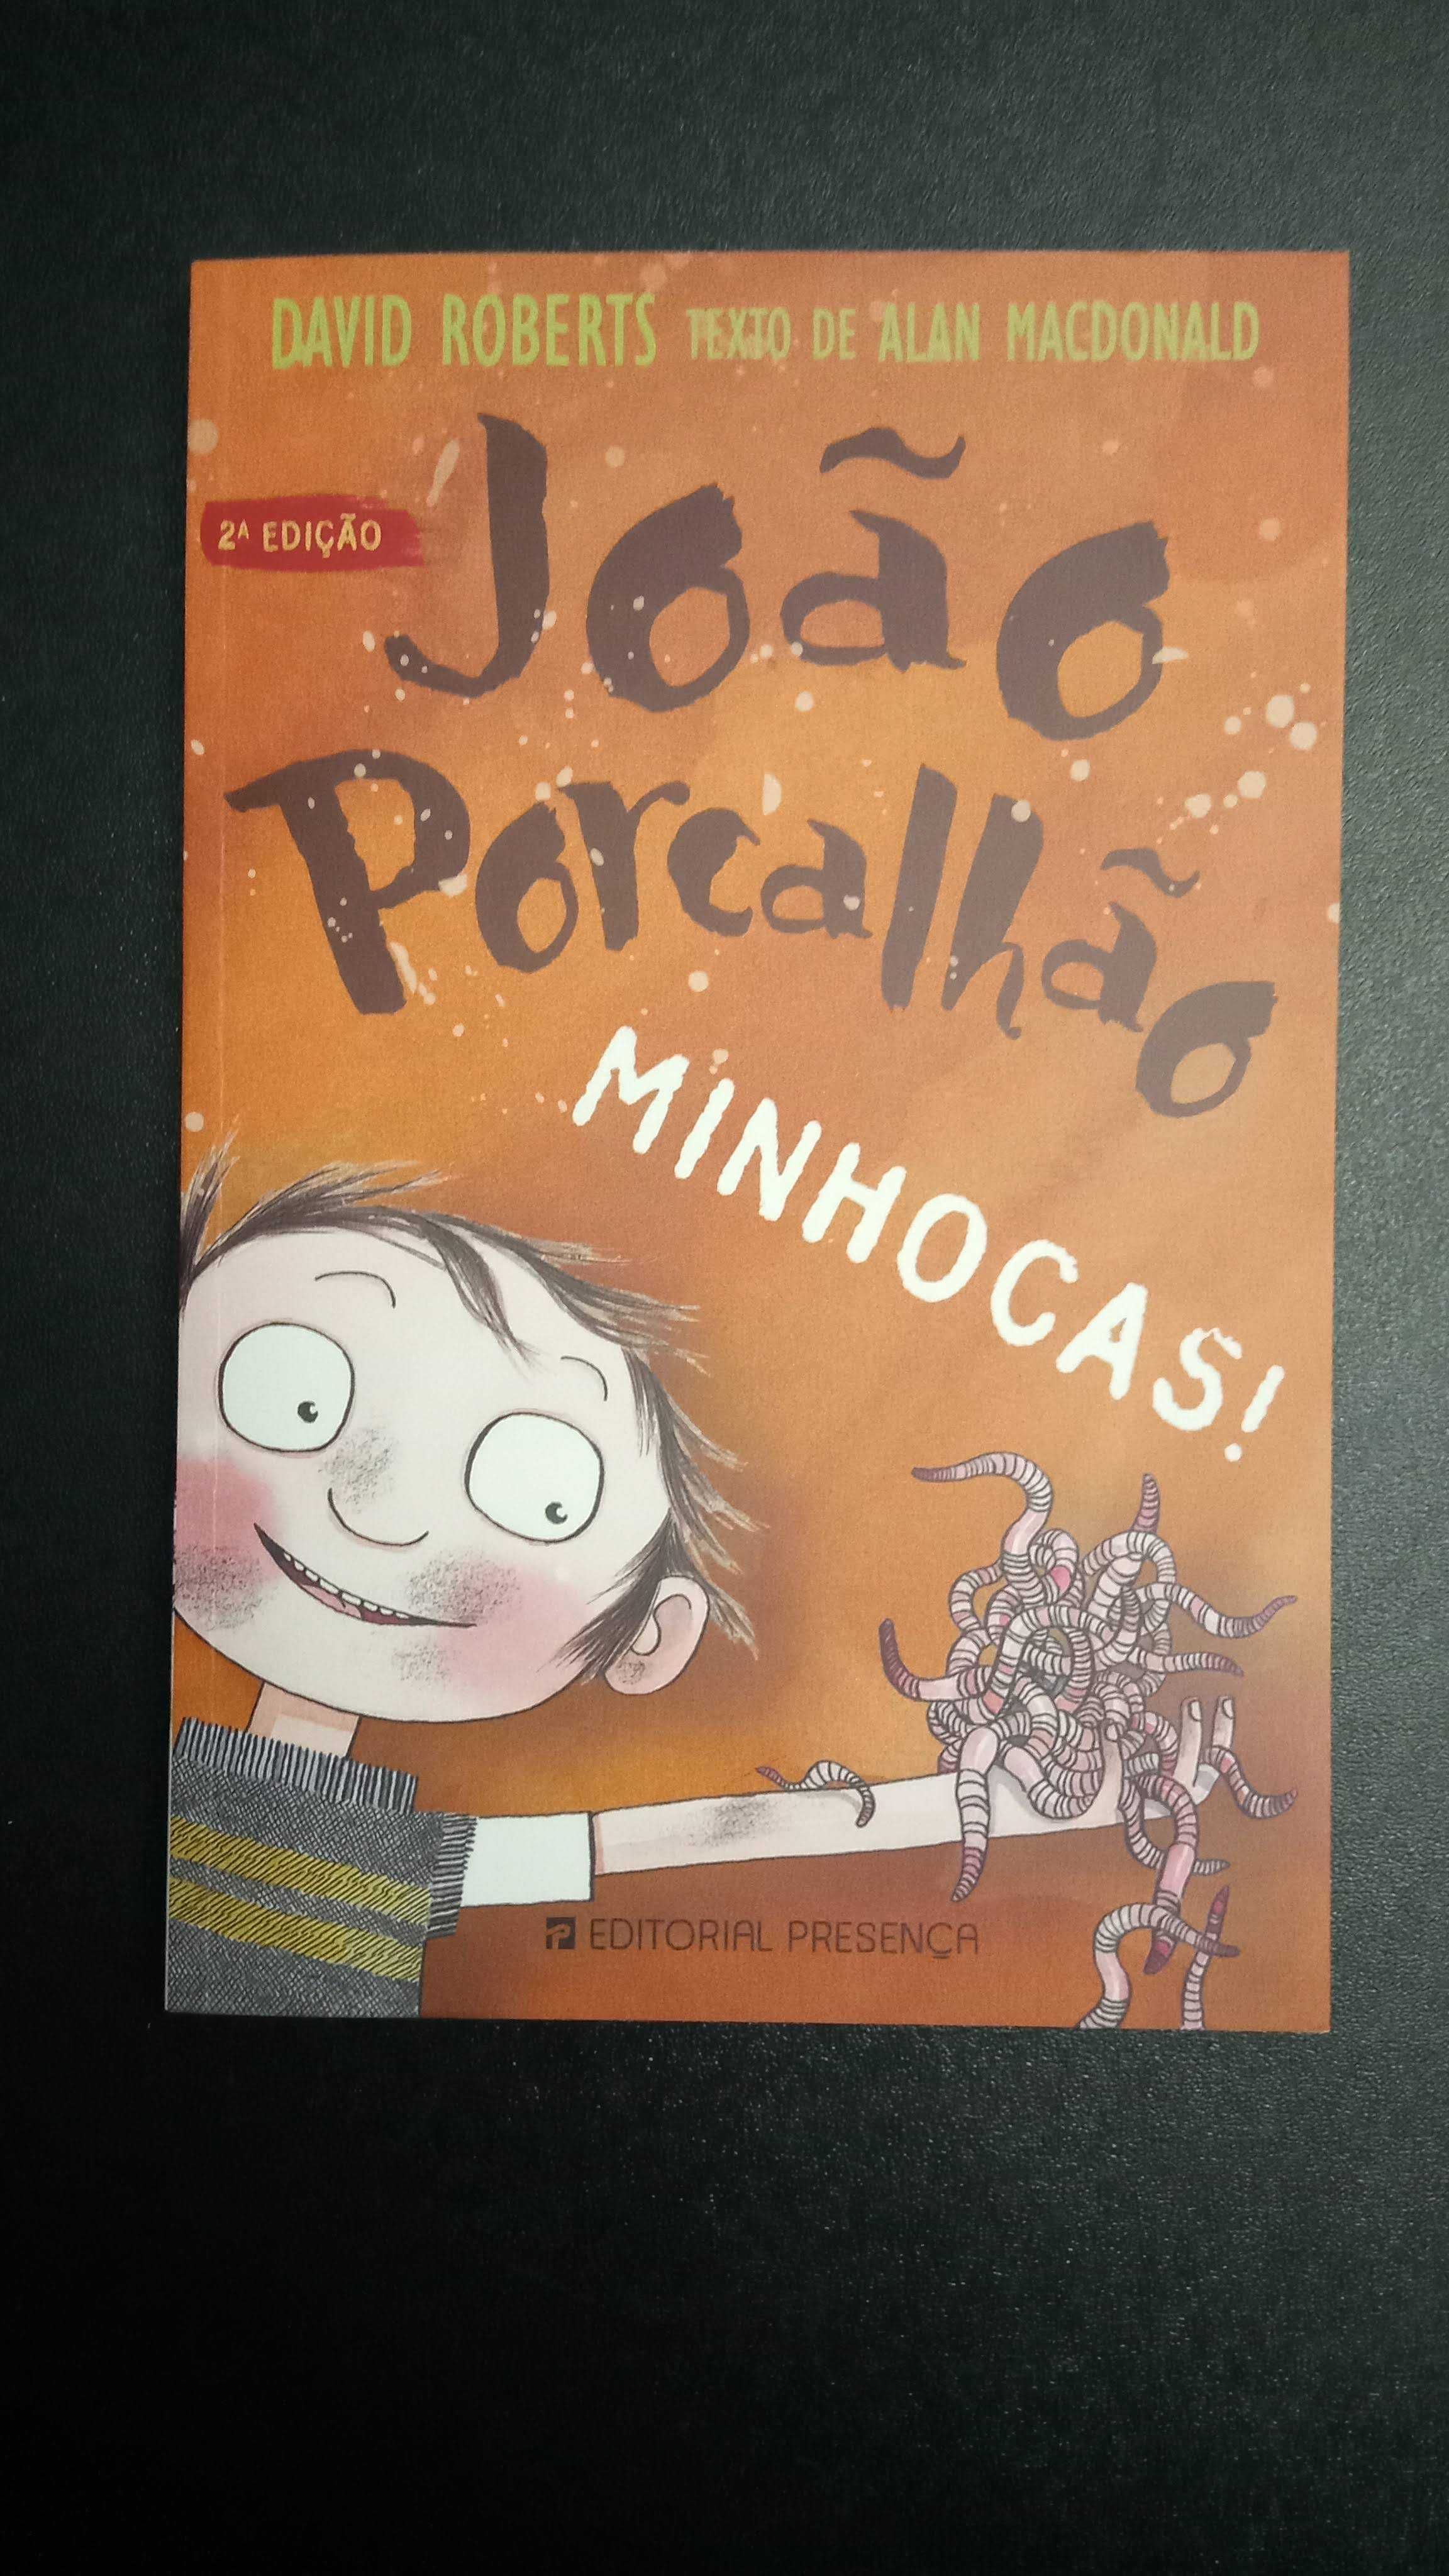 João Porcalhão: Minhocas!